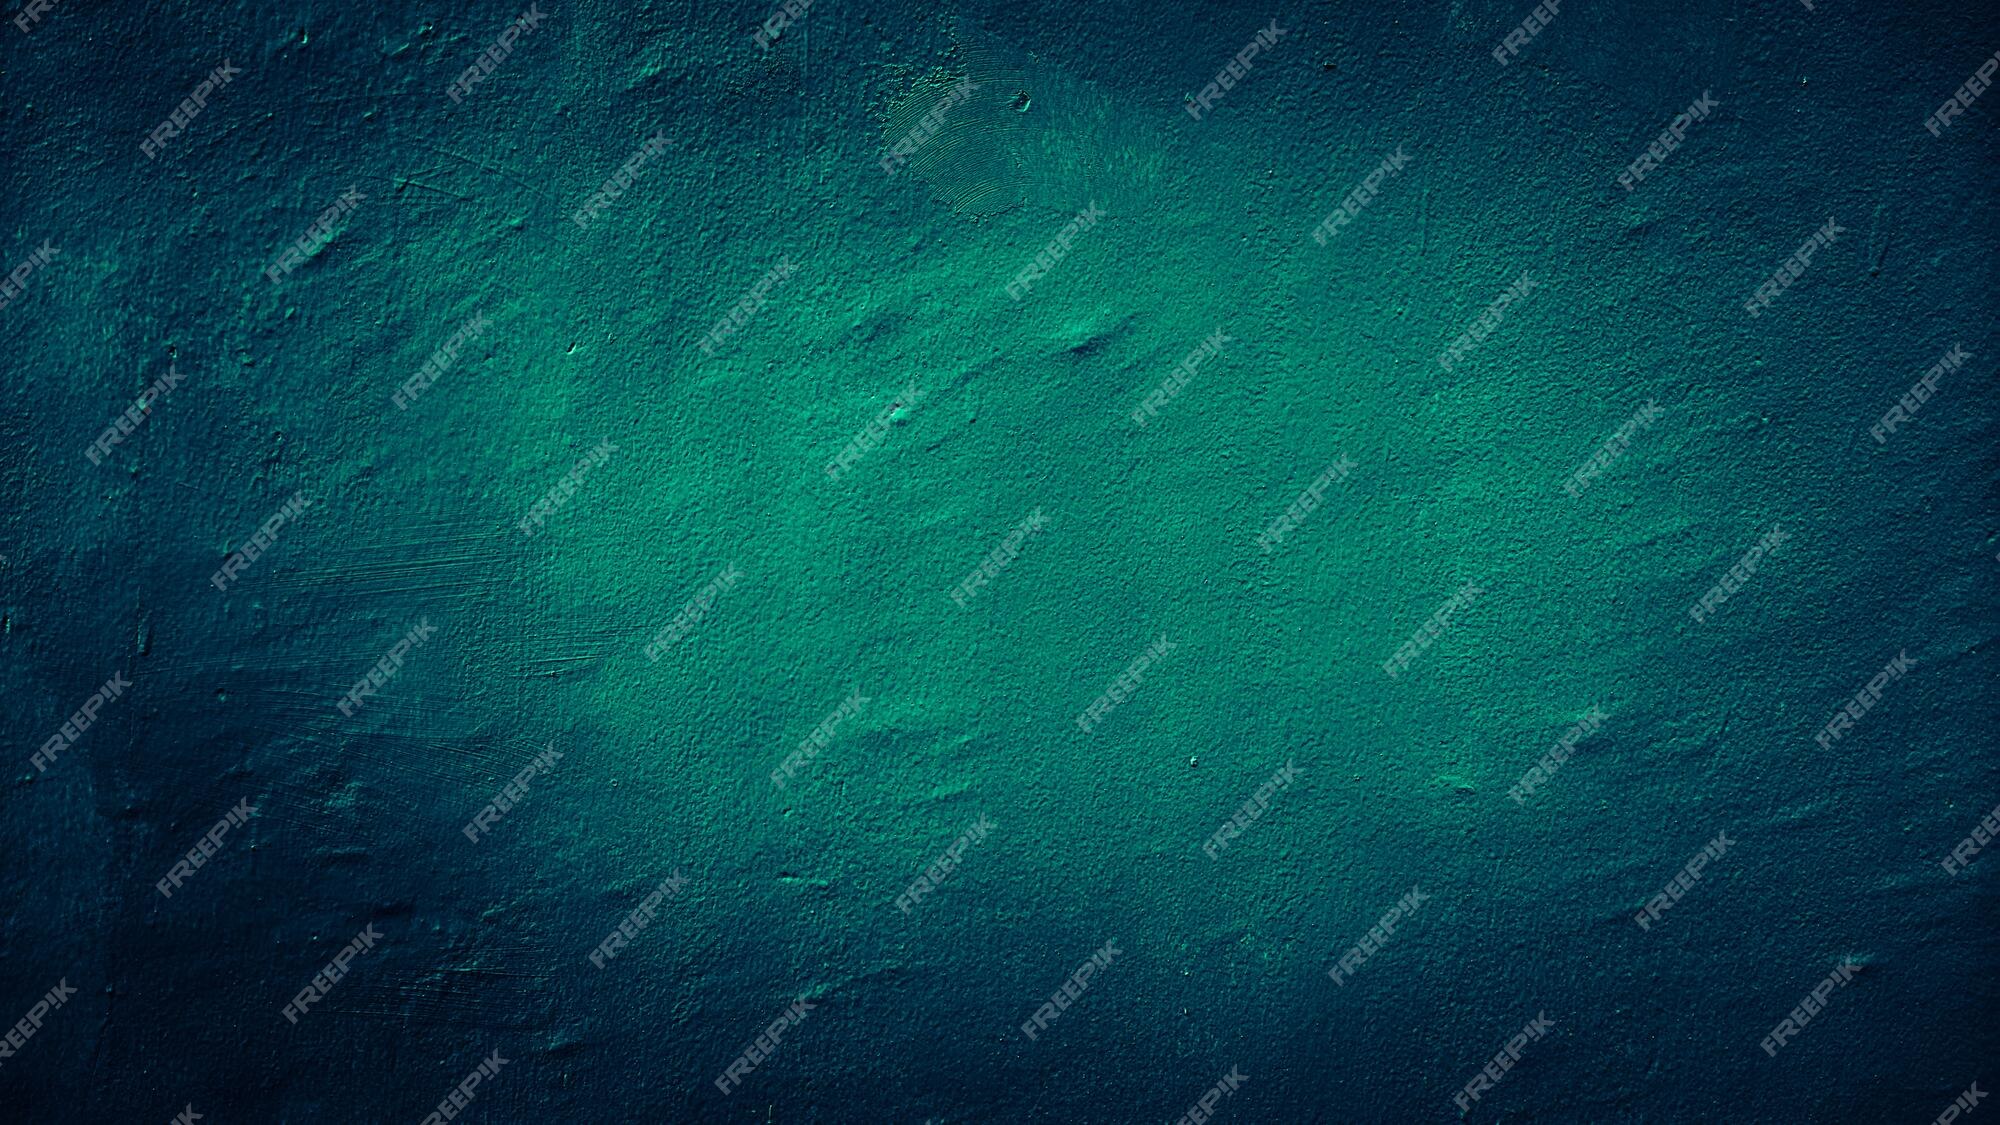 33,000+ Dark Green Blue Background Pictures